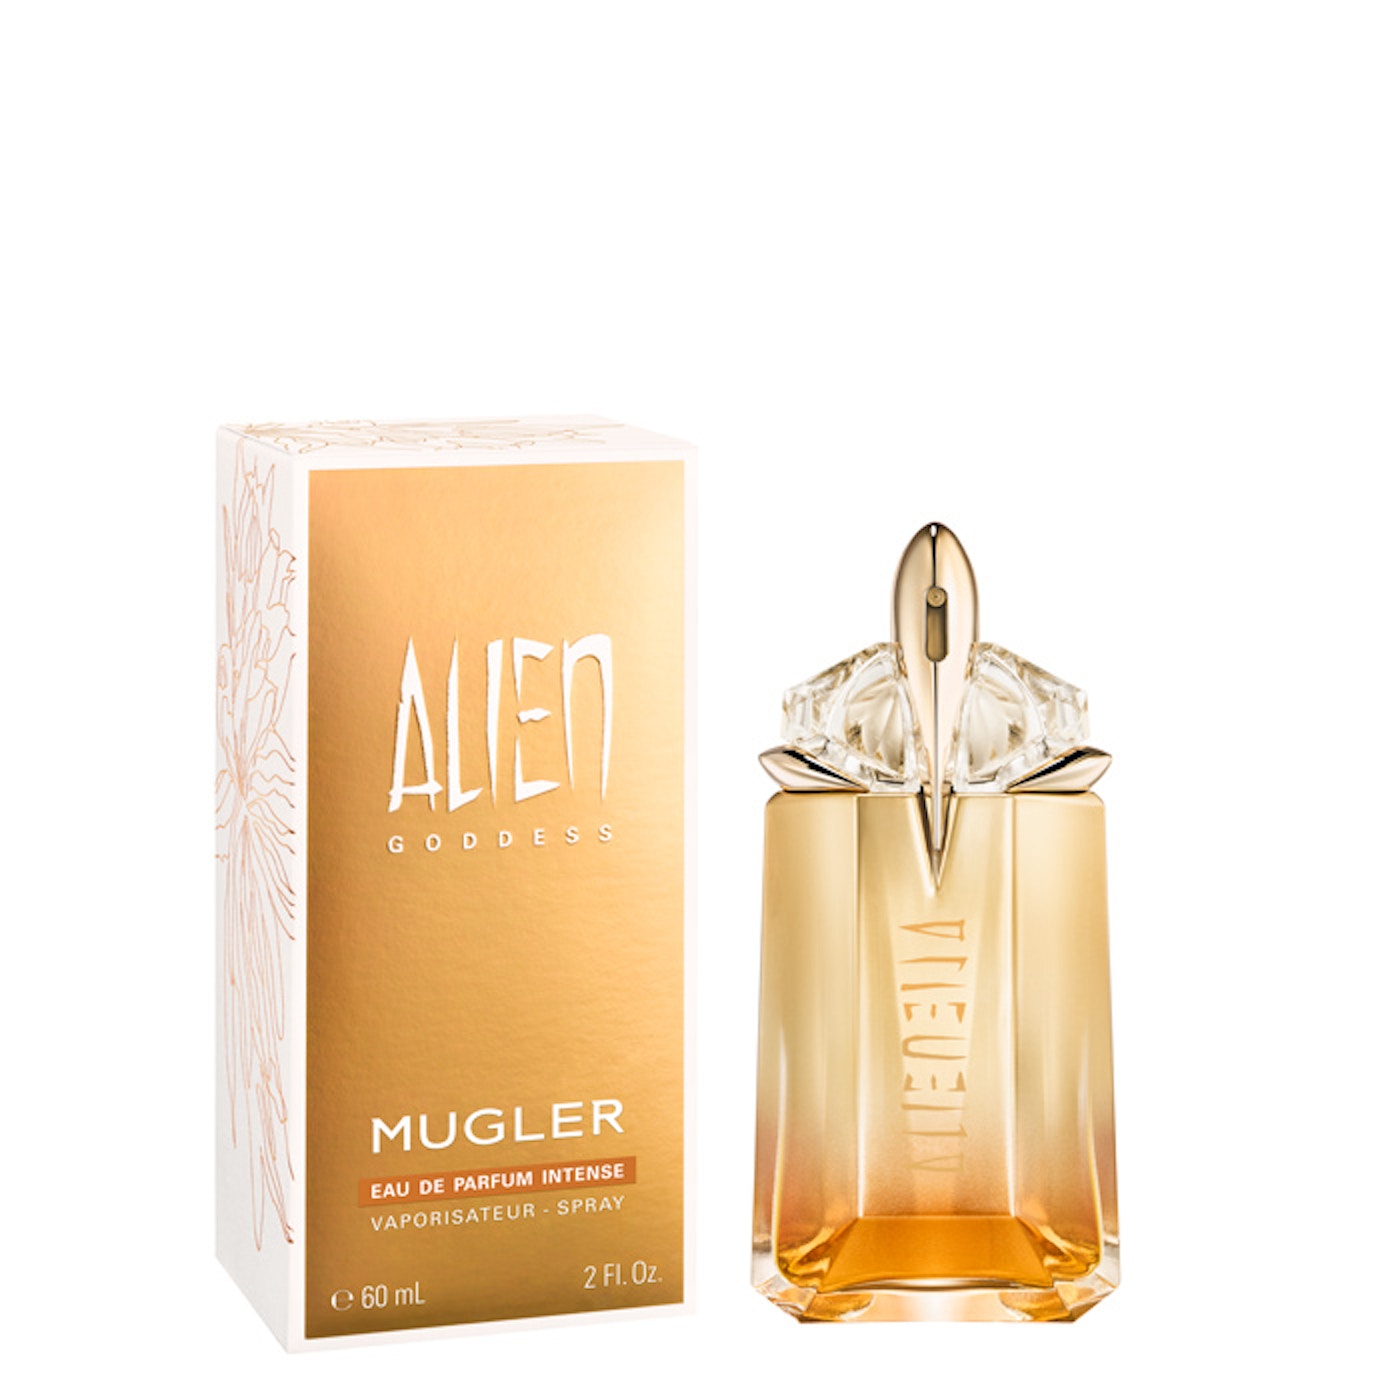 Mugler Alien Goddess Intense Eau de Parfum 60ml